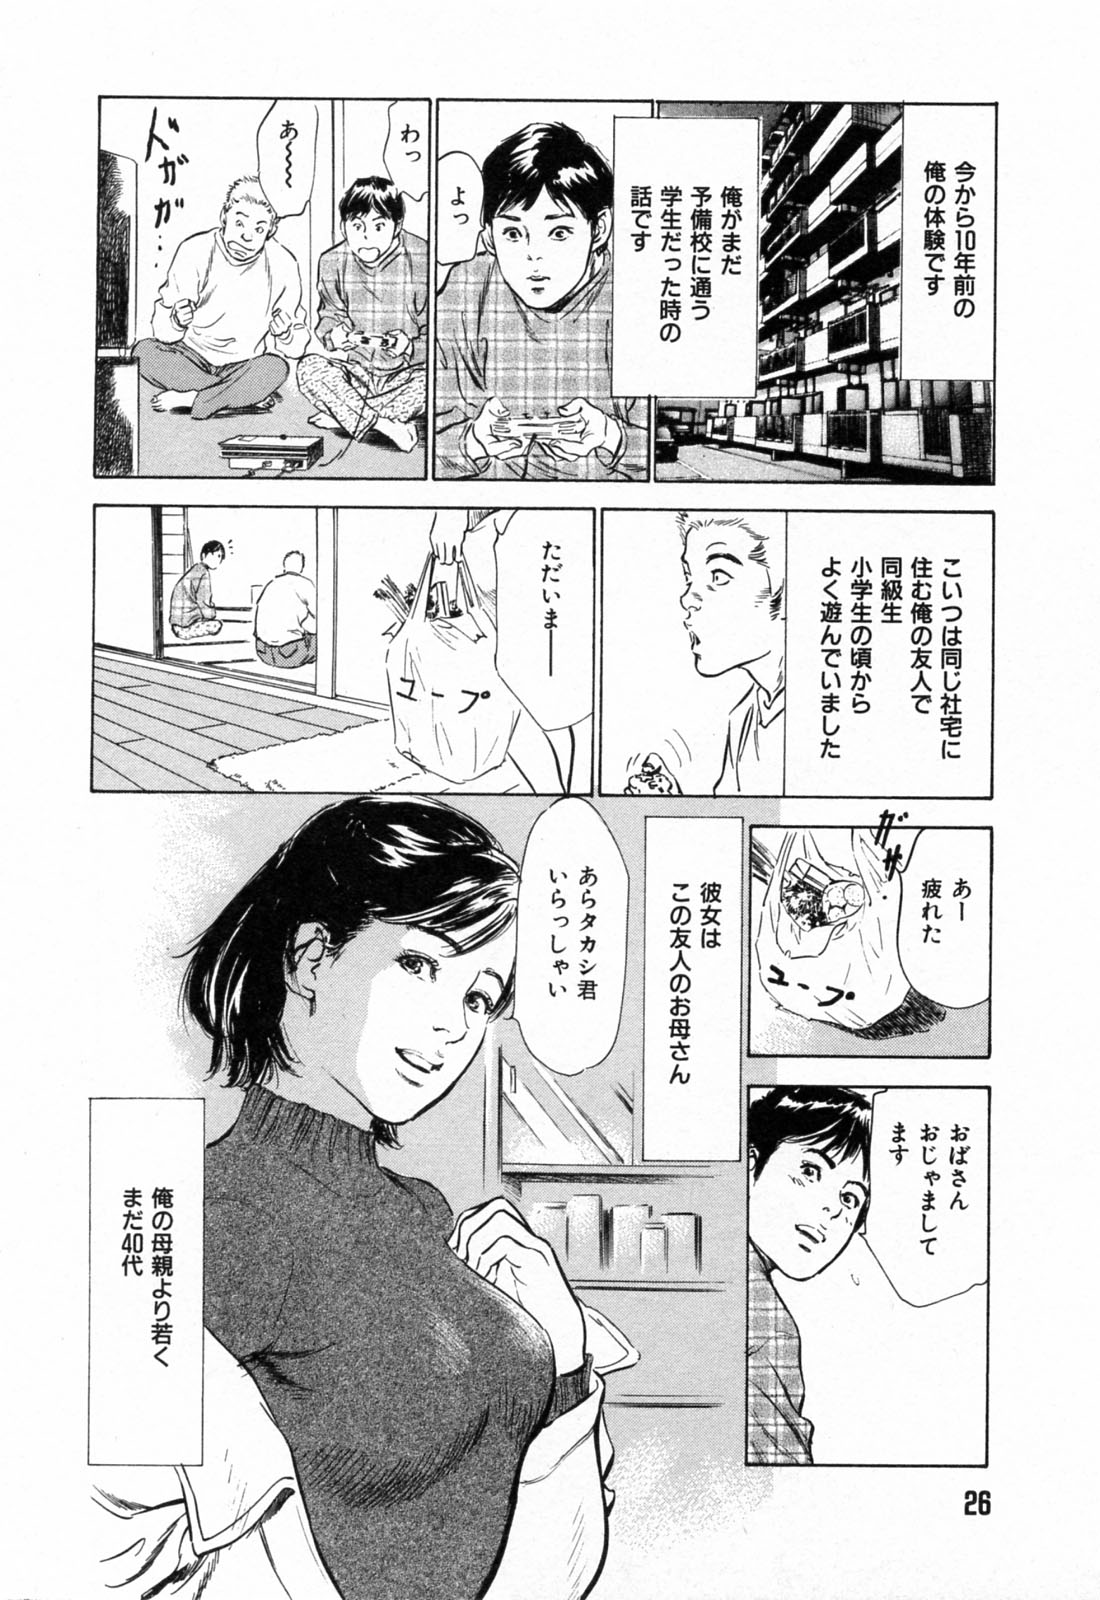 [Hazuki Kaoru] Gokinjo Okusama no Naishobanashi 1 page 28 full